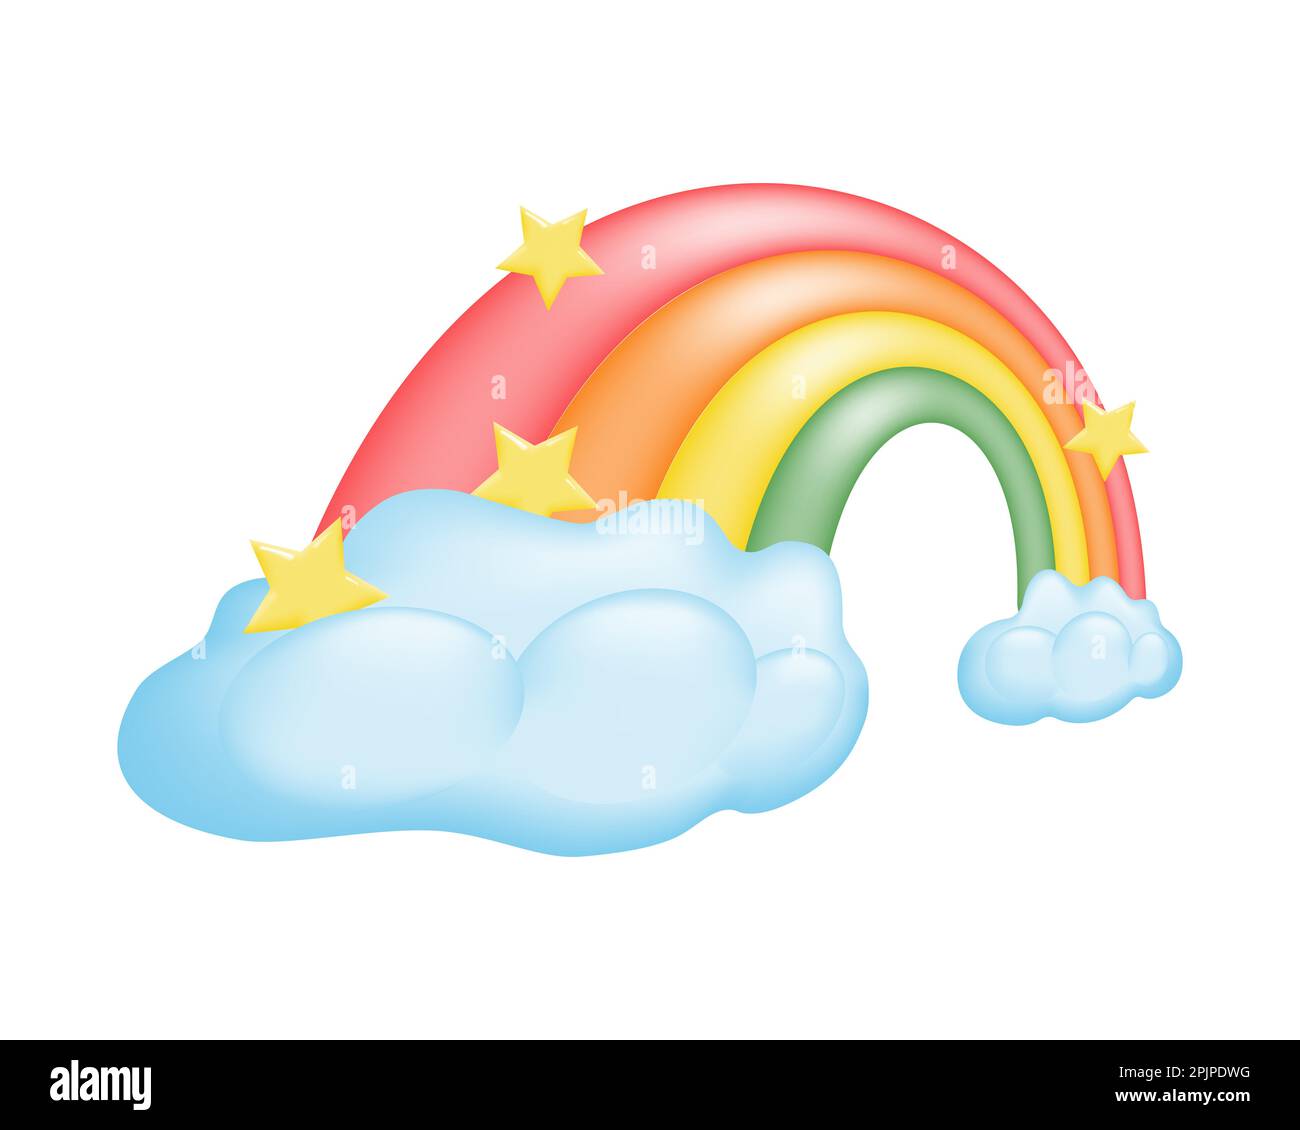 Süße 3D-Zeichentrickfilm-Regenbogen-Illustration mit flauschigen Wolken und Sternen auf weißem Hintergrund. Für Magie in jedem Projekt. Lebendige Farben und verspieltes Design. Stock Vektor